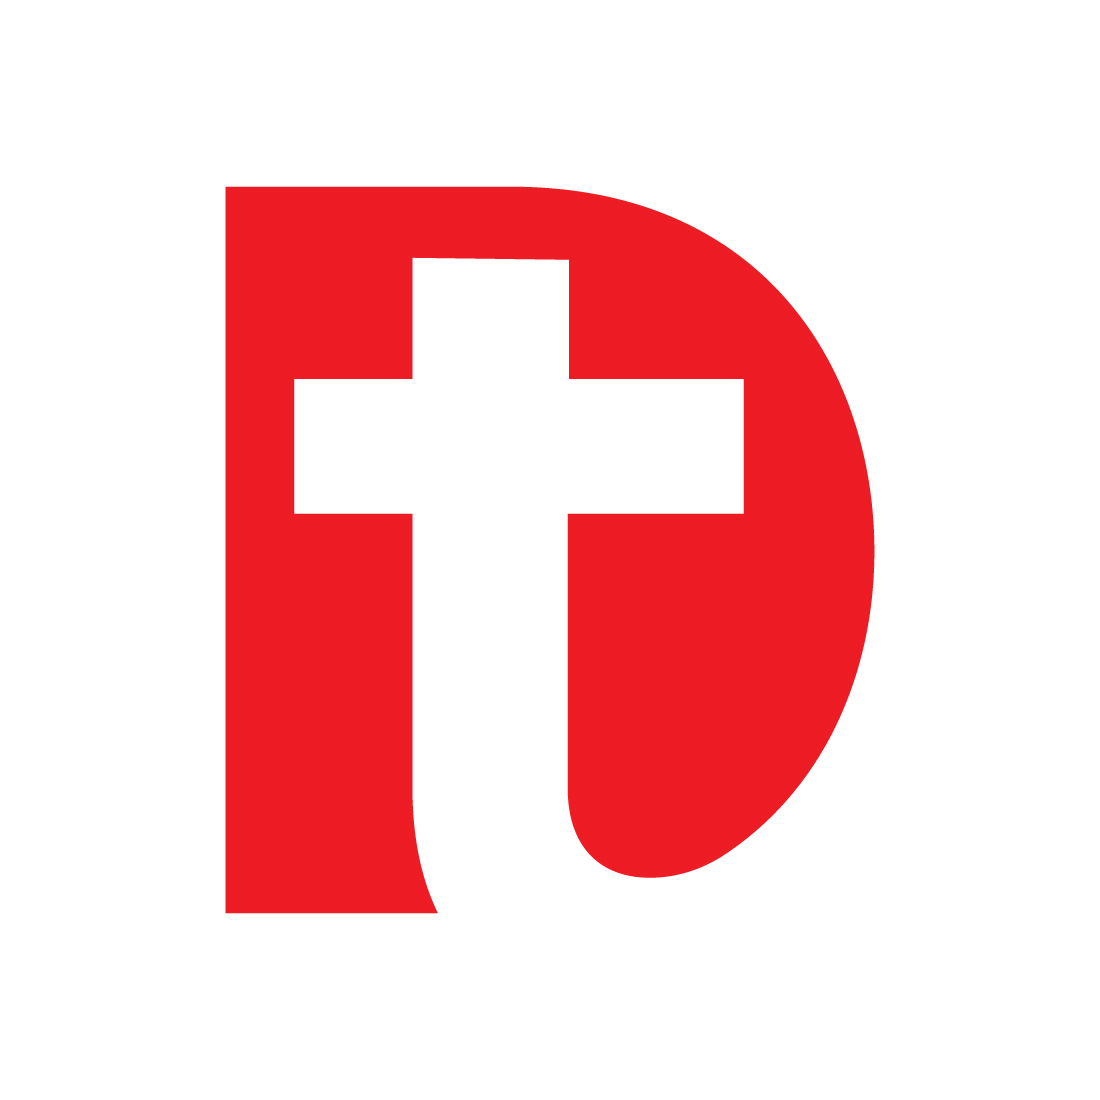 Health Letter DT logo design cover image.